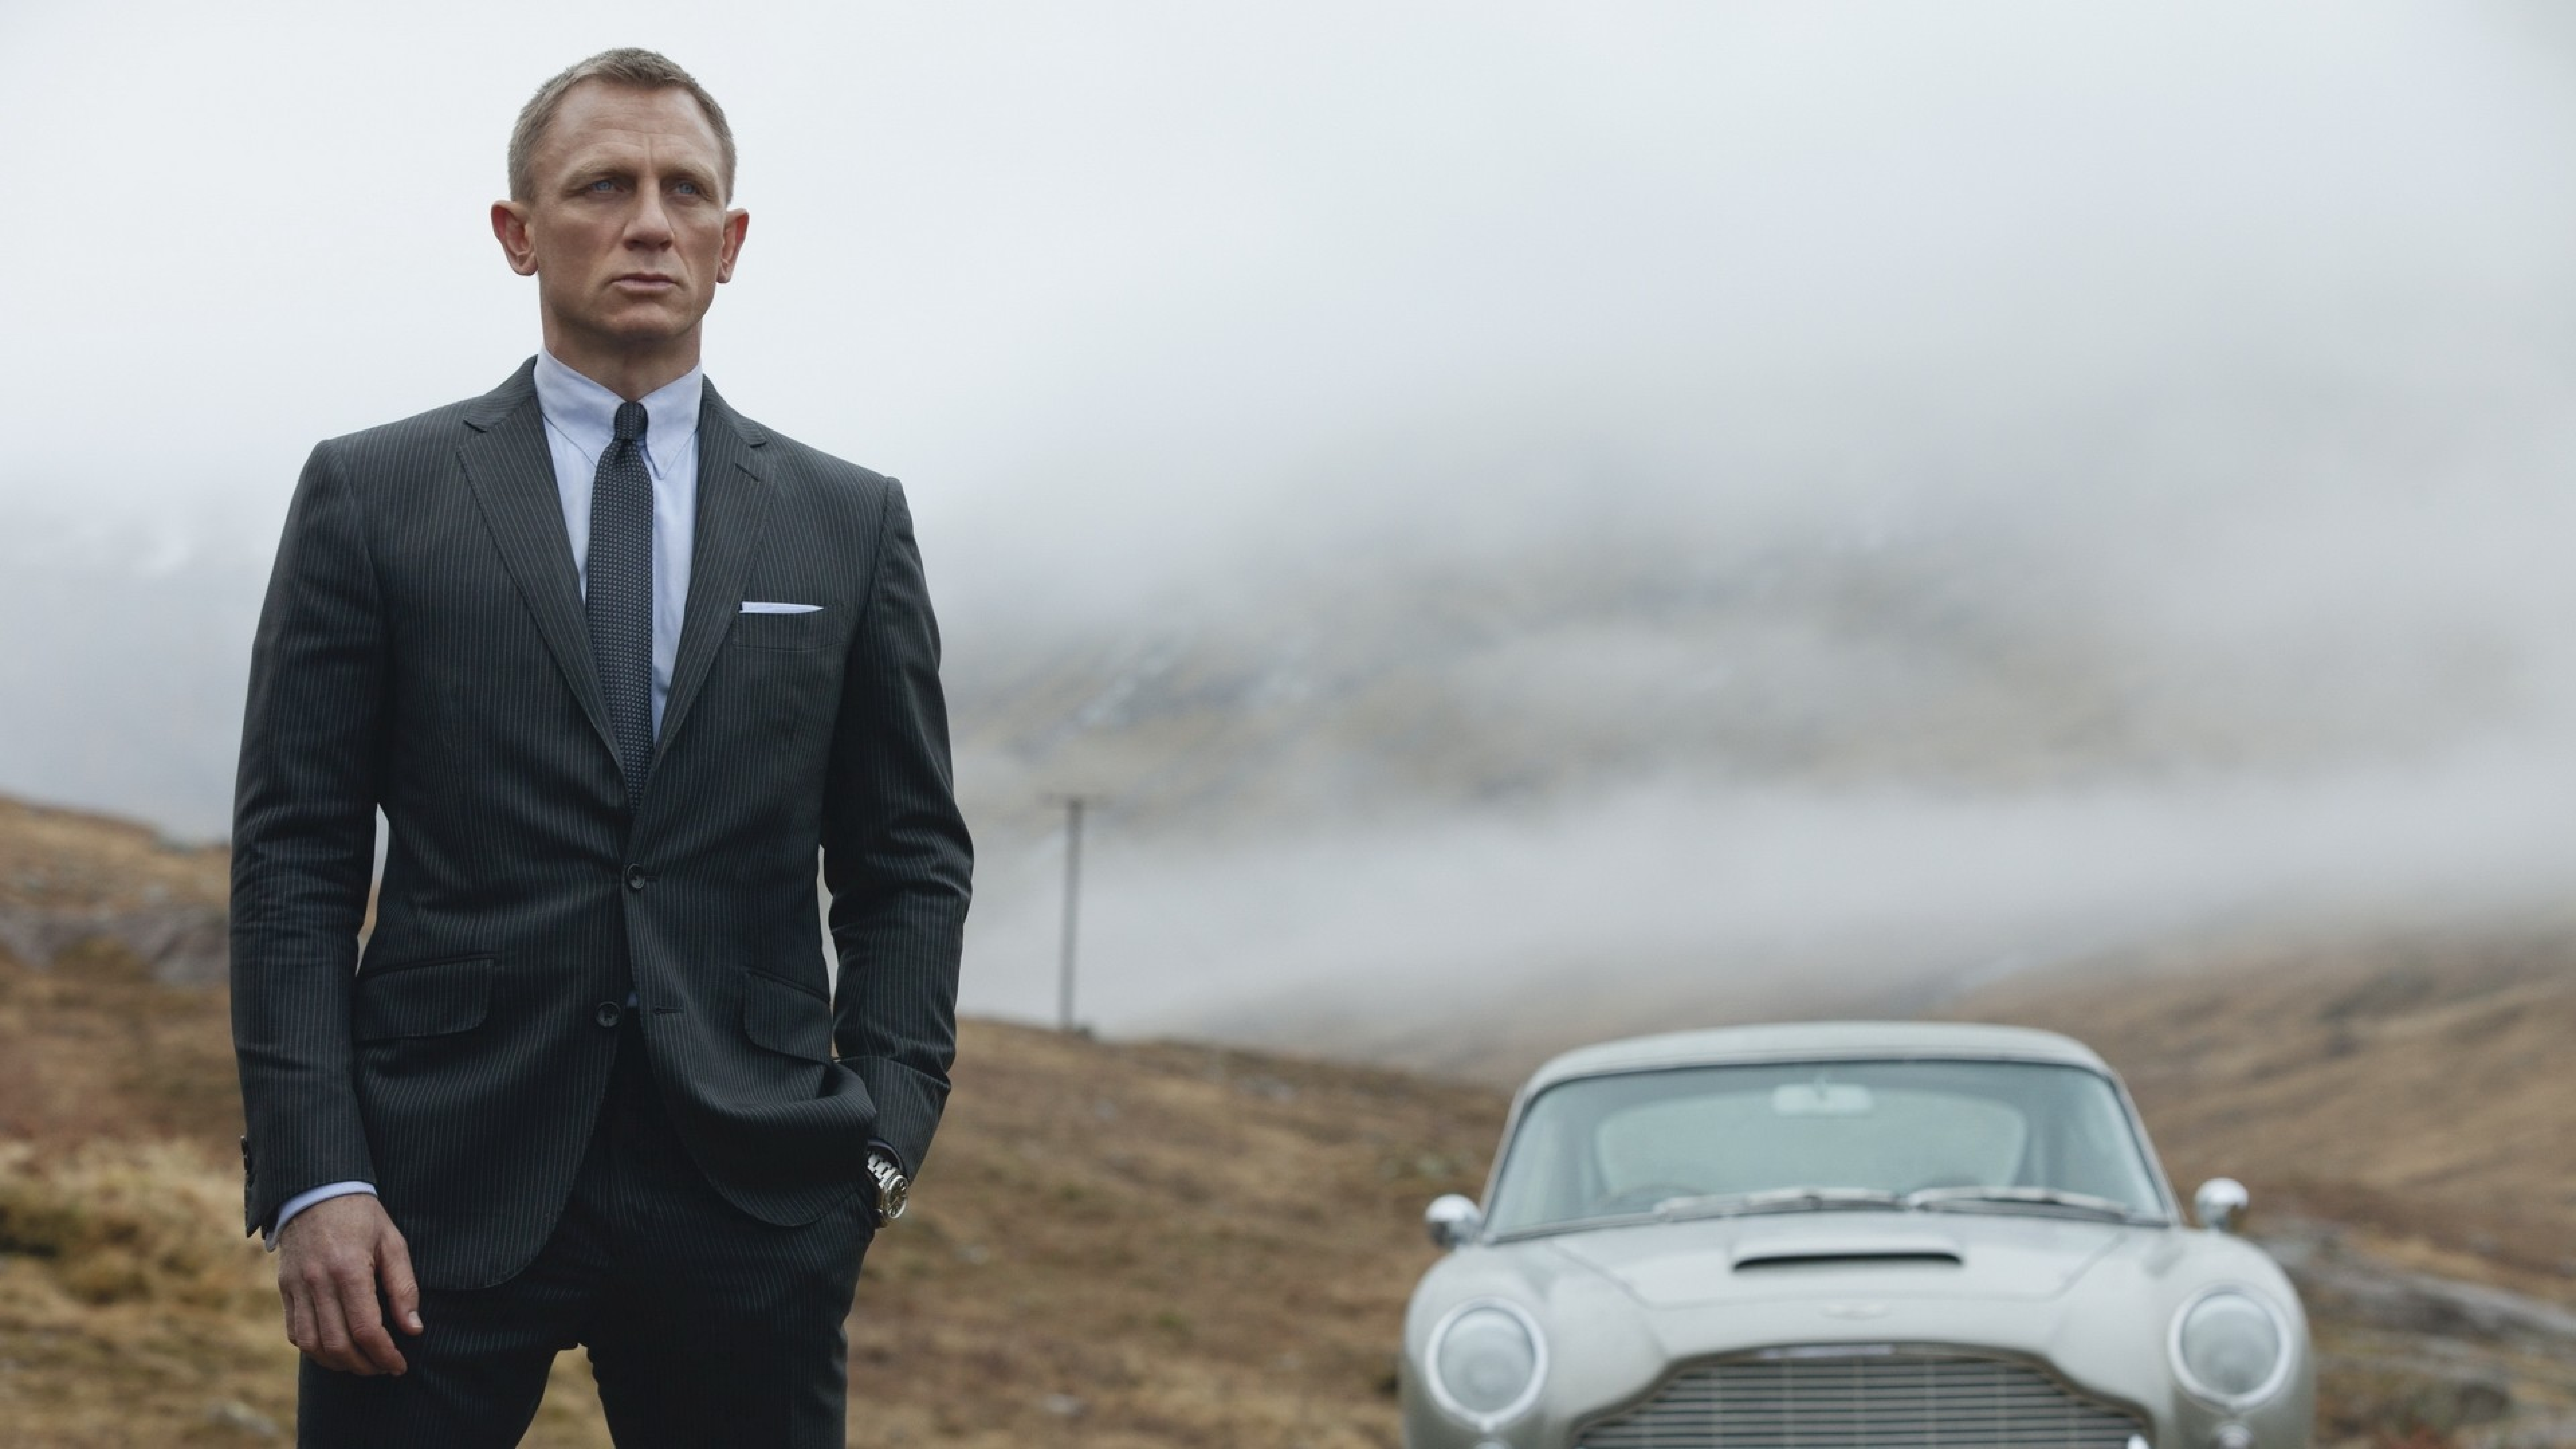 007: Координаты «Скайфолл» фильм 2012